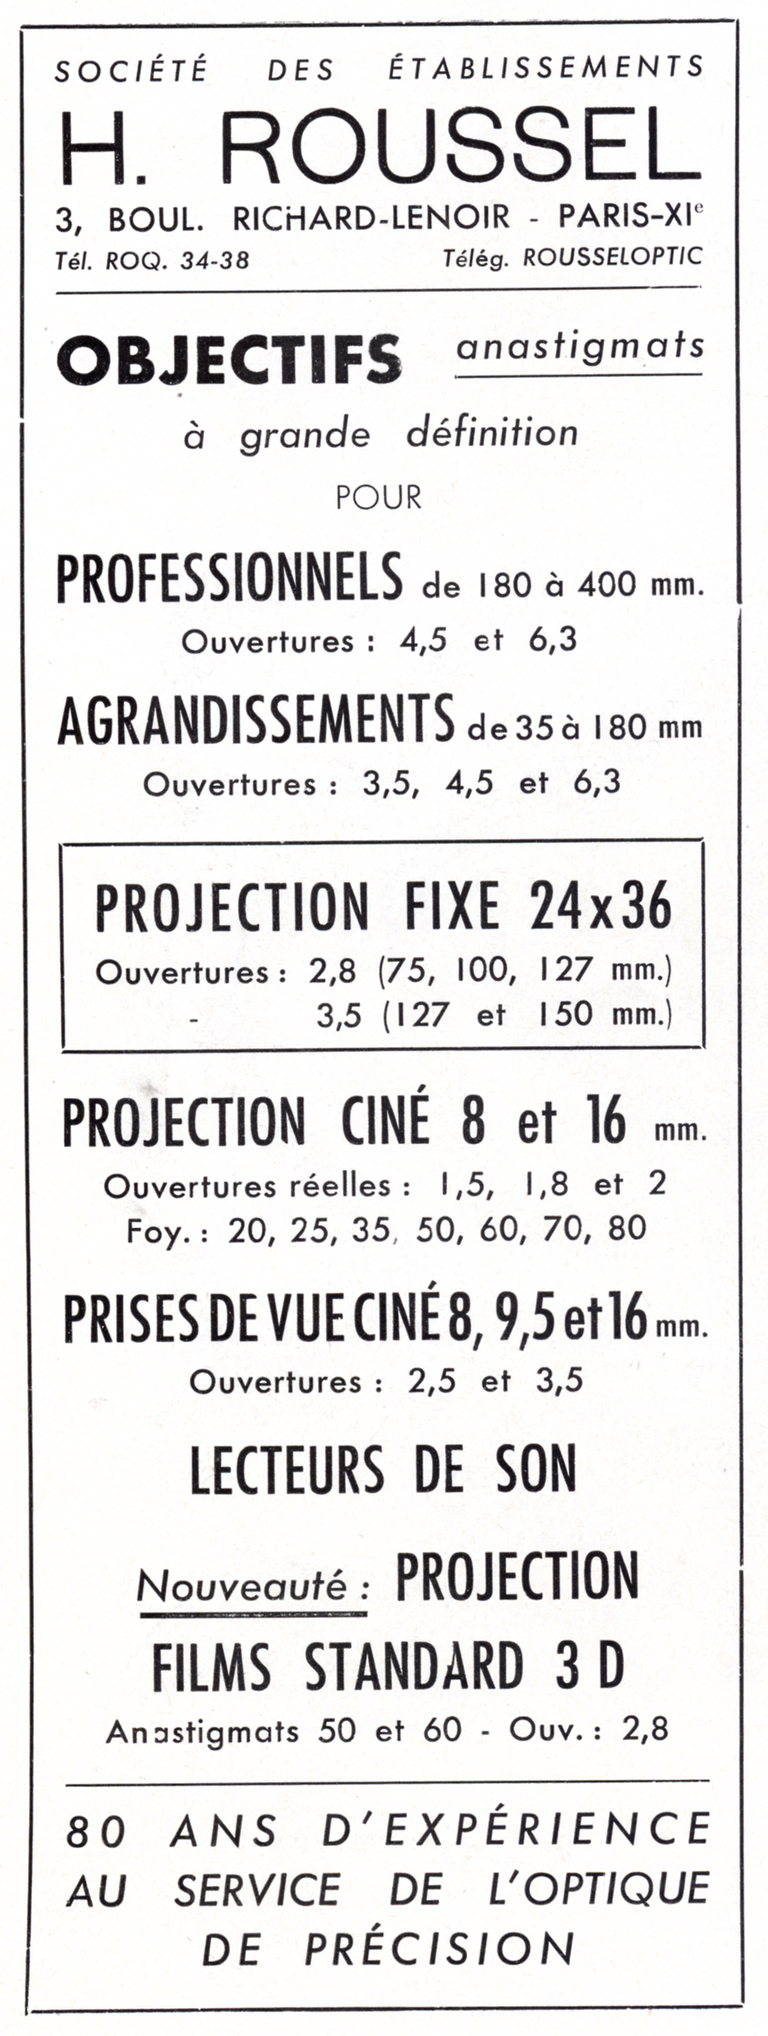 Roussel - Objectifs professionnels, agrandissement, projection fixe, projection ciné, prise de vues ciné, lecteur de son, projection film 3D - 1953